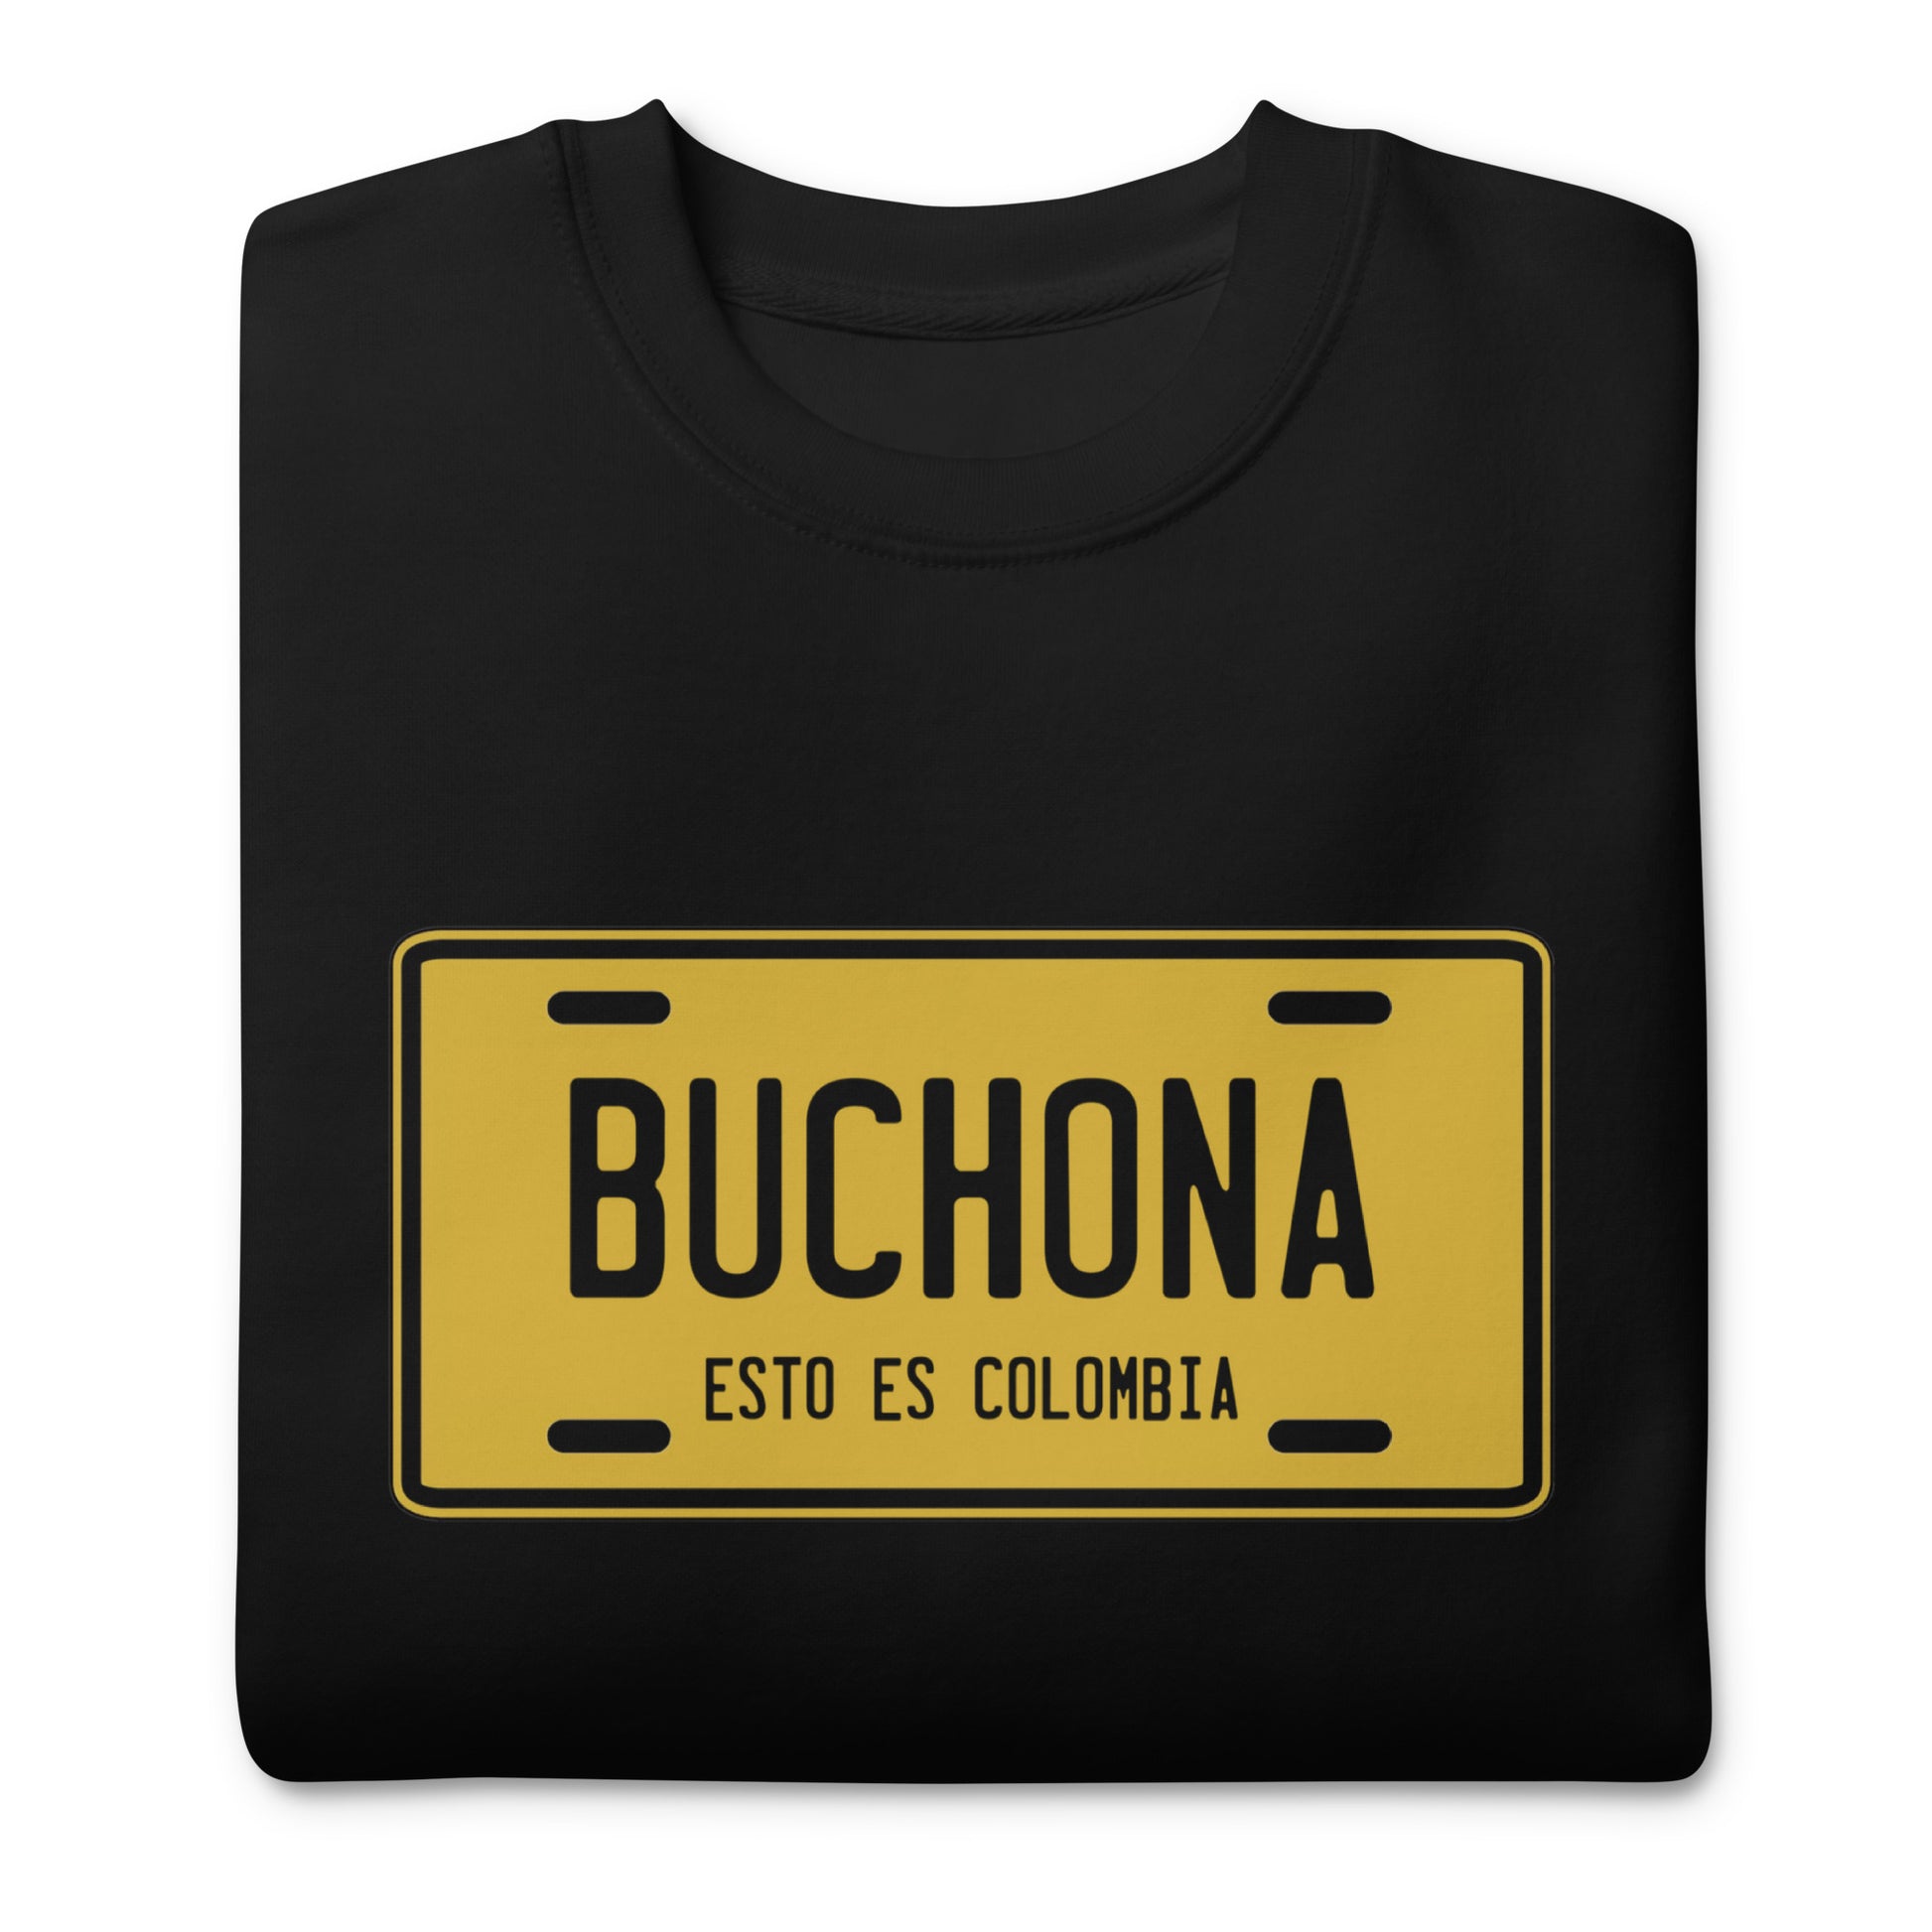 Suéter de Buchona ,Descubre calidad excepcional y estampados duraderos. Encuentra estilo y orgullo en cada prenda. Compra ahora!